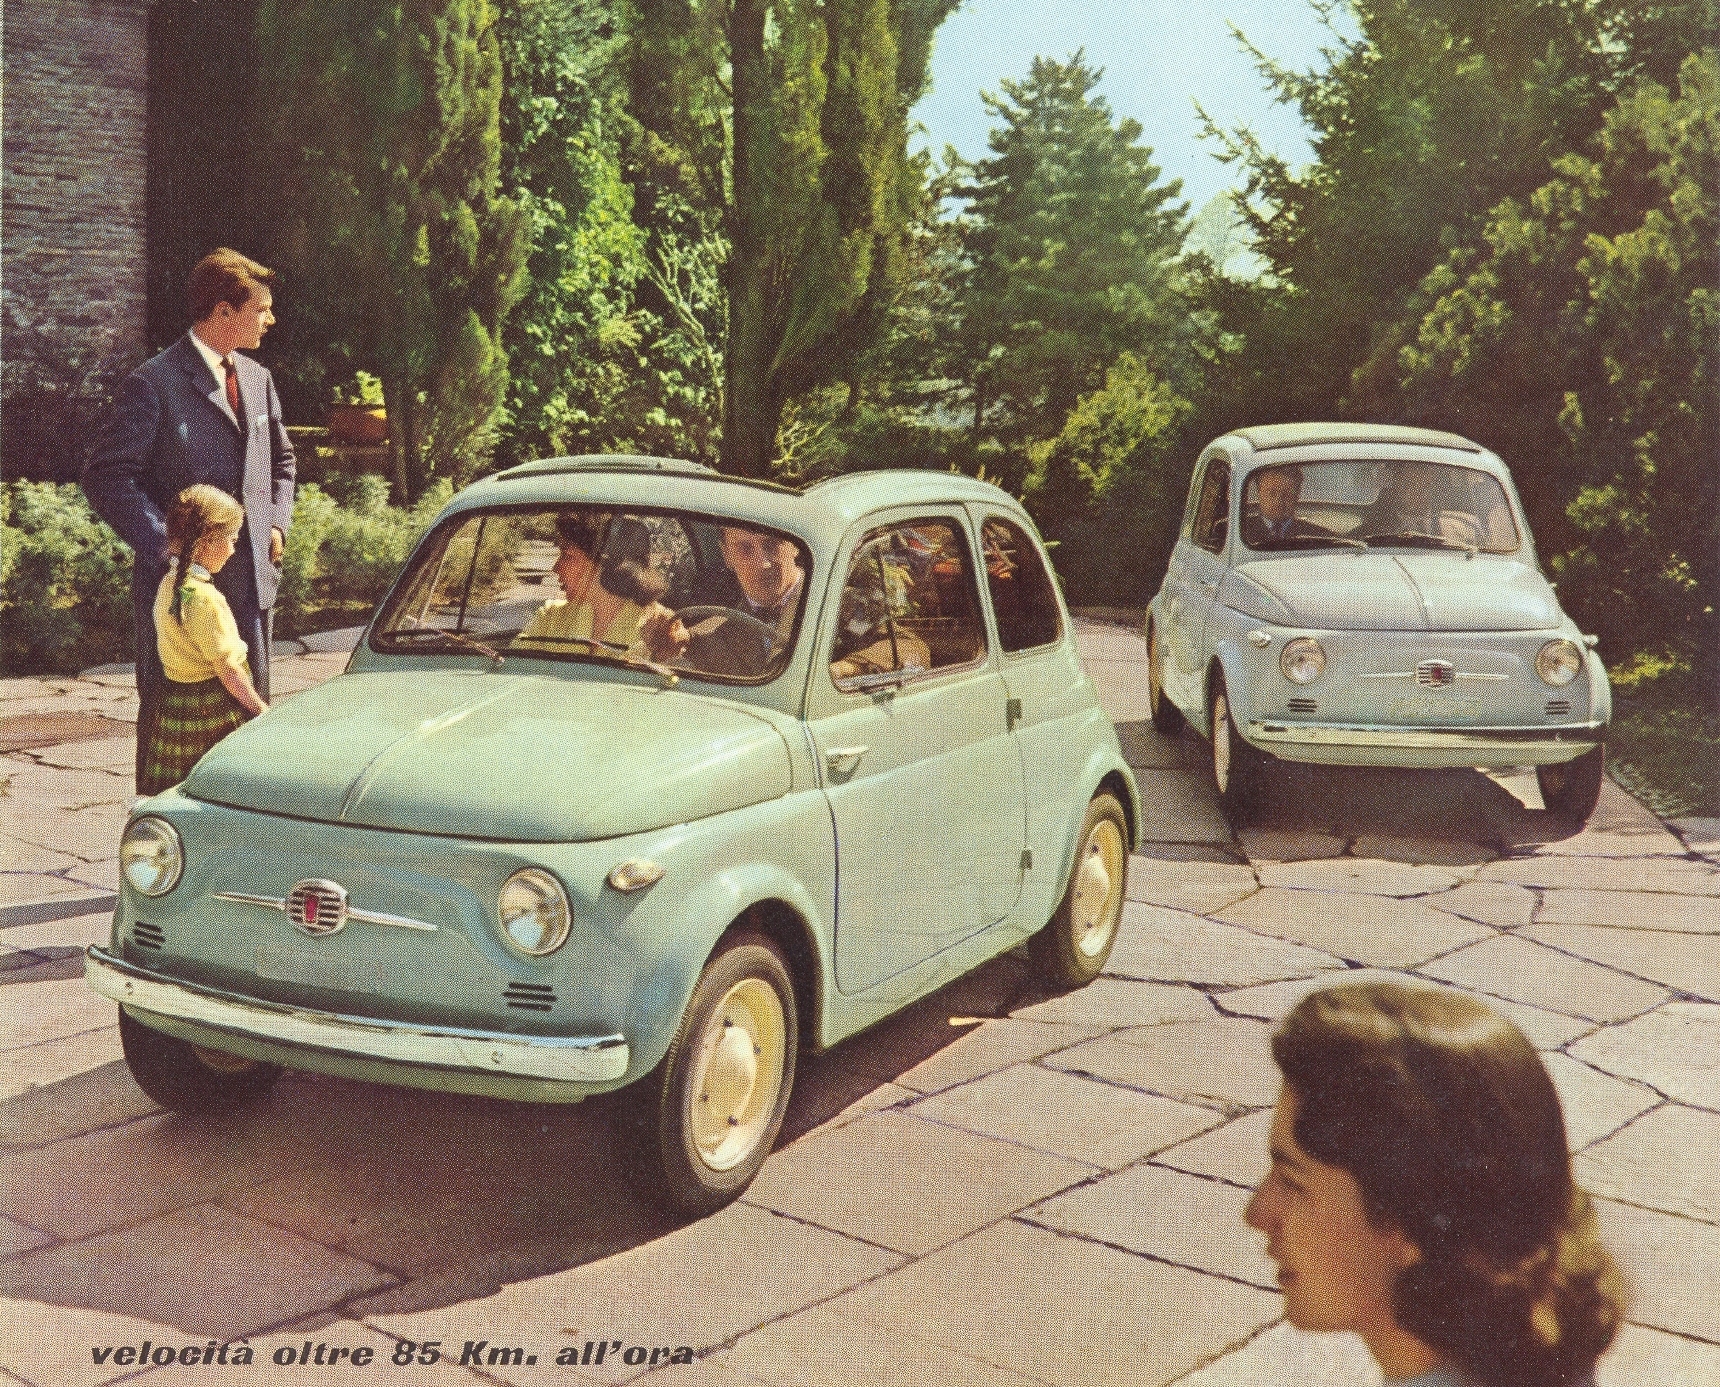 Nuova Fiat 500 Advert 1957